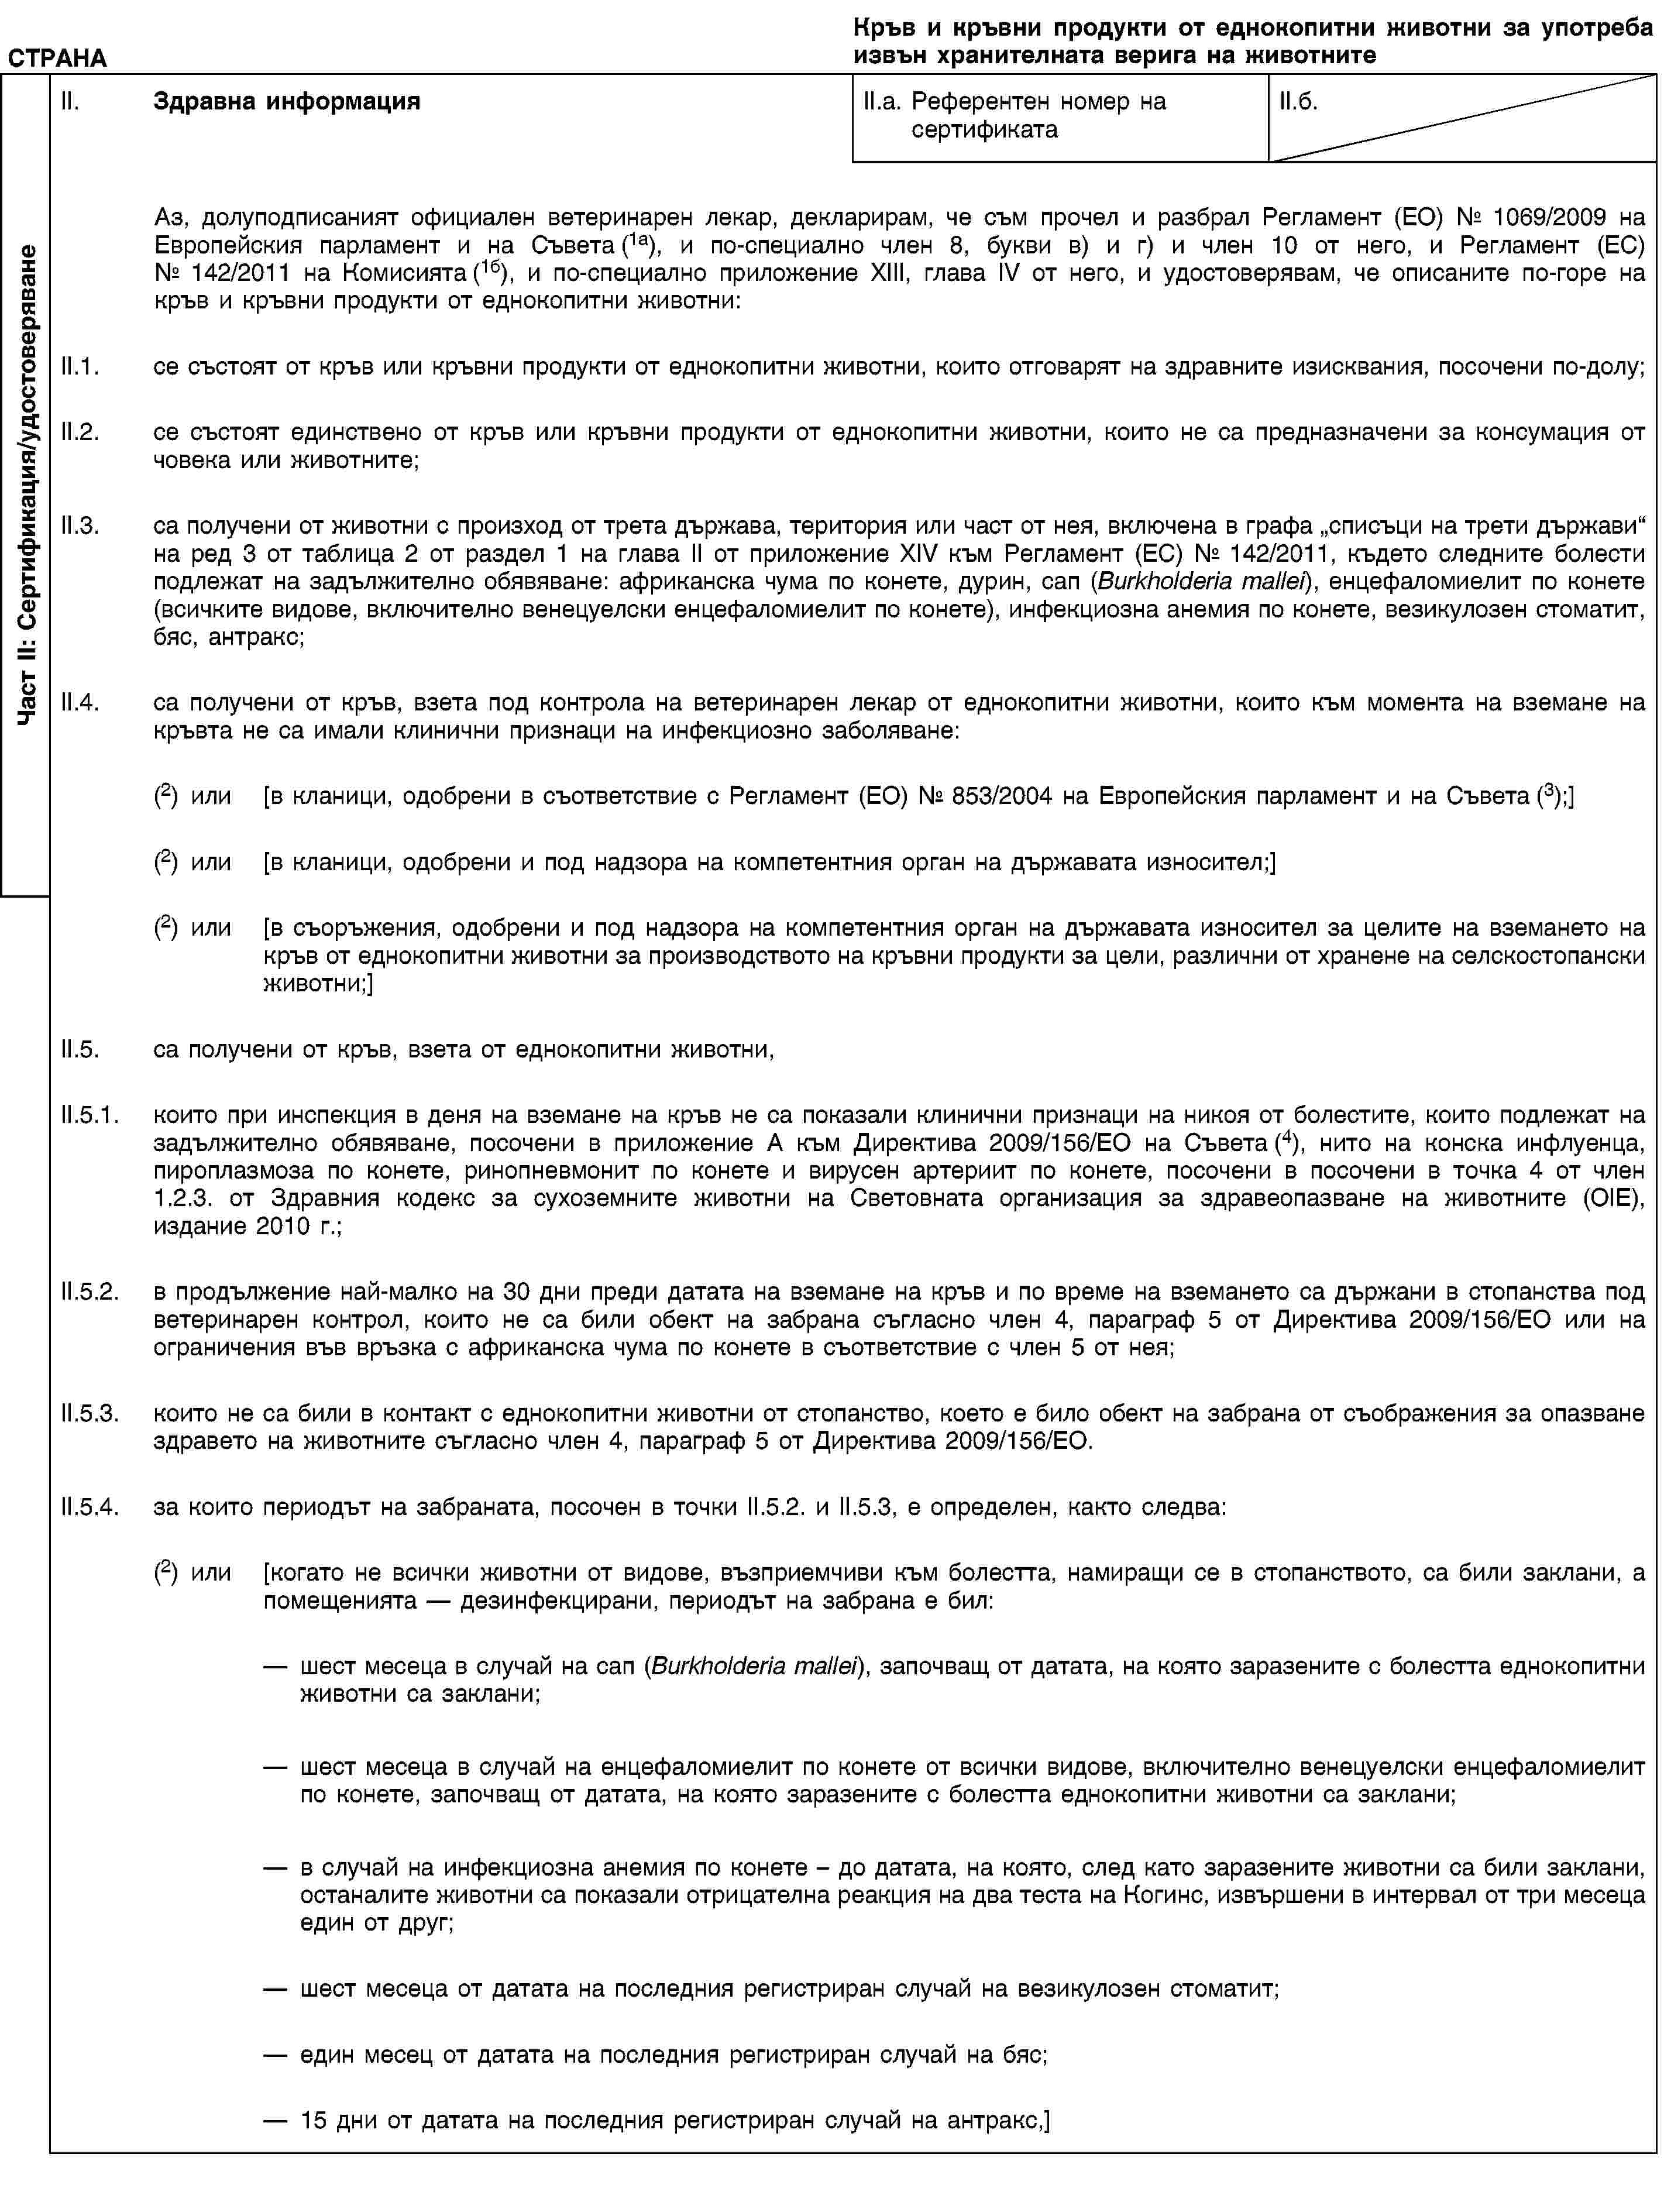 Част II: Сертификация/удостоверяванеСТРАНАКръв и кръвни продукти от еднокопитни животни за употреба извън хранителната верига на животнитеII. Здравна информацияII.a. Референтен номер на сертификатаII.б.Аз, долуподписаният официален ветеринарен лекар, декларирам, че съм прочел и разбрал Регламент (ЕО) № 1069/2009 на Европейския парламент и на Съвета (1а), и по-специално член 8, букви в) и г) и член 10 от него, и Регламент (ЕС) № 142/2011 на Комисията (1б), и по-специално приложение XIII, глава IV от него, и удостоверявам, че описаните по-горе на кръв и кръвни продукти от еднокопитни животни:II.1. се състоят от кръв или кръвни продукти от еднокопитни животни, които отговарят на здравните изисквания, посочени по-долу;II.2. се състоят единствено от кръв или кръвни продукти от еднокопитни животни, които не са предназначени за консумация от човека или животните;II.3. са получени от животни с произход от трета държава, територия или част от нея, включена в графа „списъци на трети държави“ на ред 3 от таблица 2 от раздел 1 на глава II от приложение XIV към Регламент (ЕС) № 142/2011, където следните болести подлежат на задължително обявяване: африканска чума по конете, дурин, сап (Burkholderia mallei), енцефаломиелит по конете (всичките видове, включително венецуелски енцефаломиелит по конете), инфекциозна анемия по конете, везикулозен стоматит, бяс, антракс;II.4. са получени от кръв, взета под контрола на ветеринарен лекар от еднокопитни животни, които към момента на вземане на кръвта не са имали клинични признаци на инфекциозно заболяване:(2) или [в кланици, одобрени в съответствие с Регламент (ЕО) № 853/2004 на Европейския парламент и на Съвета (3);](2) или [в кланици, одобрени и под надзора на компетентния орган на държавата износител;](2) или [в съоръжения, одобрени и под надзора на компетентния орган на държавата износител за целите на вземането на кръв от еднокопитни животни за производството на кръвни продукти за цели, различни от хранене на селскостопански животни;]II.5. са получени от кръв, взета от еднокопитни животни,II.5.1. които при инспекция в деня на вземане на кръв не са показали клинични признаци на никоя от болестите, които подлежат на задължително обявяване, посочени в приложение А към Директива 2009/156/ЕО на Съвета (4), нито на конска инфлуенца, пироплазмоза по конете, ринопневмонит по конете и вирусен артериит по конете, посочени в посочени в точка 4 от член 1.2.3. от Здравния кодекс за сухоземните животни на Световната организация за здравеопазване на животните (OIE), издание 2010 г.;II.5.2. в продължение най-малко на 30 дни преди датата на вземане на кръв и по време на вземането са държани в стопанства под ветеринарен контрол, които не са били обект на забрана съгласно член 4, параграф 5 от Директива 2009/156/ЕО или на ограничения във връзка с африканска чума по конете в съответствие с член 5 от нея;II.5.3. които не са били в контакт с еднокопитни животни от стопанство, което е било обект на забрана от съображения за опазване здравето на животните съгласно член 4, параграф 5 от Директива 2009/156/ЕО.II.5.4. за които периодът на забраната, посочен в точки II.5.2. и II.5.3, е определен, както следва:(2) или [когато не всички животни от видове, възприемчиви към болестта, намиращи се в стопанството, са били заклани, а помещенията — дезинфекцирани, периодът на забрана е бил:шест месеца в случай на сап (Burkholderia mallei), започващ от датата, на която заразените с болестта еднокопитни животни са заклани;шест месеца в случай на енцефаломиелит по конете от всички видове, включително венецуелски енцефаломиелит по конете, започващ от датата, на която заразените с болестта еднокопитни животни са заклани;в случай на инфекциозна анемия по конете – до датата, на която, след като заразените животни са били заклани, останалите животни са показали отрицателна реакция на два теста на Когинс, извършени в интервал от три месеца един от друг;шест месеца от датата на последния регистриран случай на везикулозен стоматит;един месец от датата на последния регистриран случай на бяс;15 дни от датата на последния регистриран случай на антракс,]